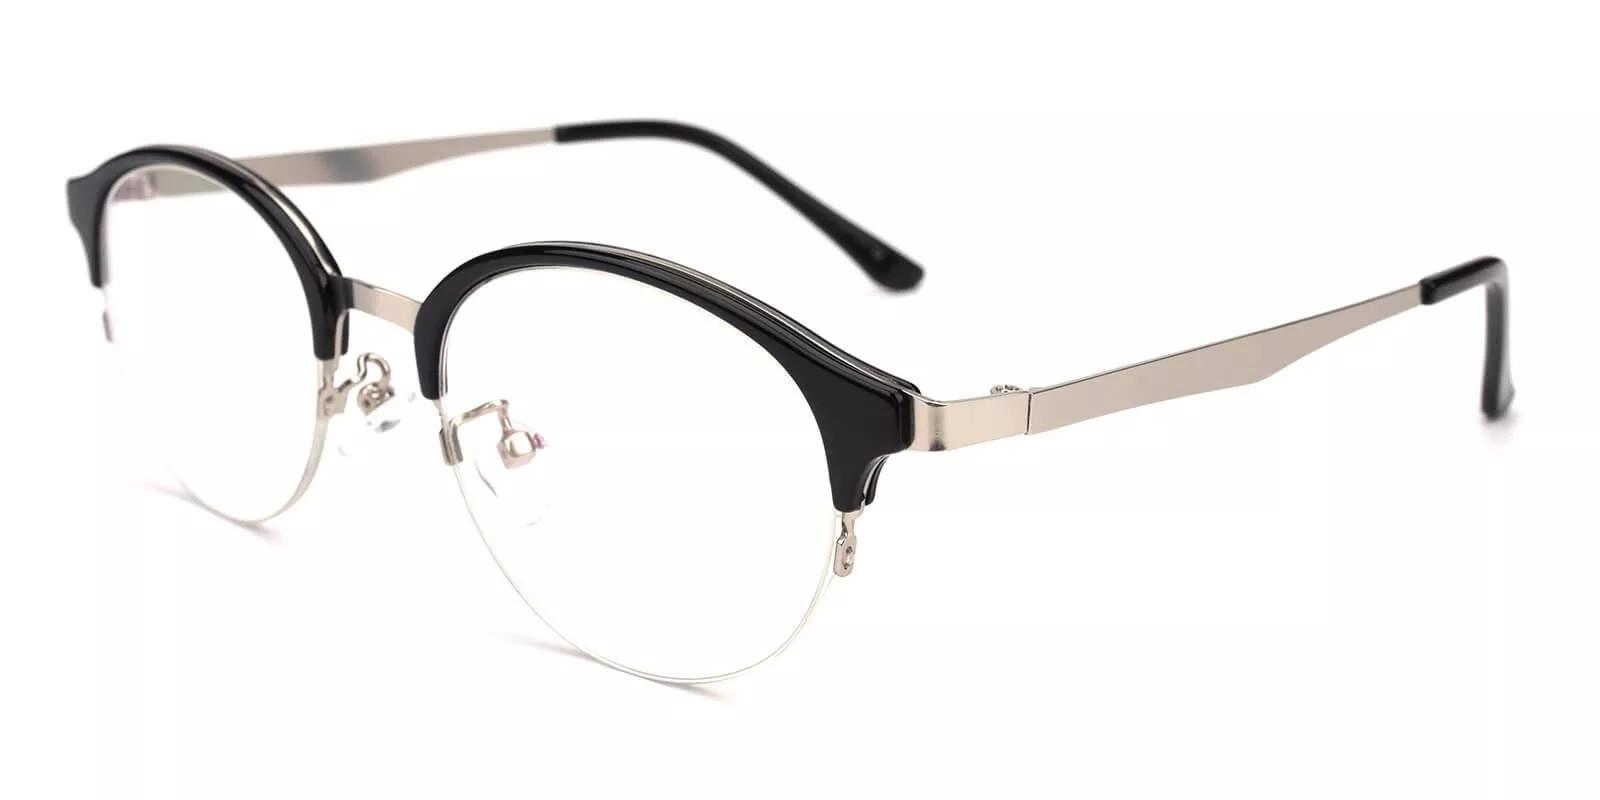 Meridian Half Rim Eyeglasses Black